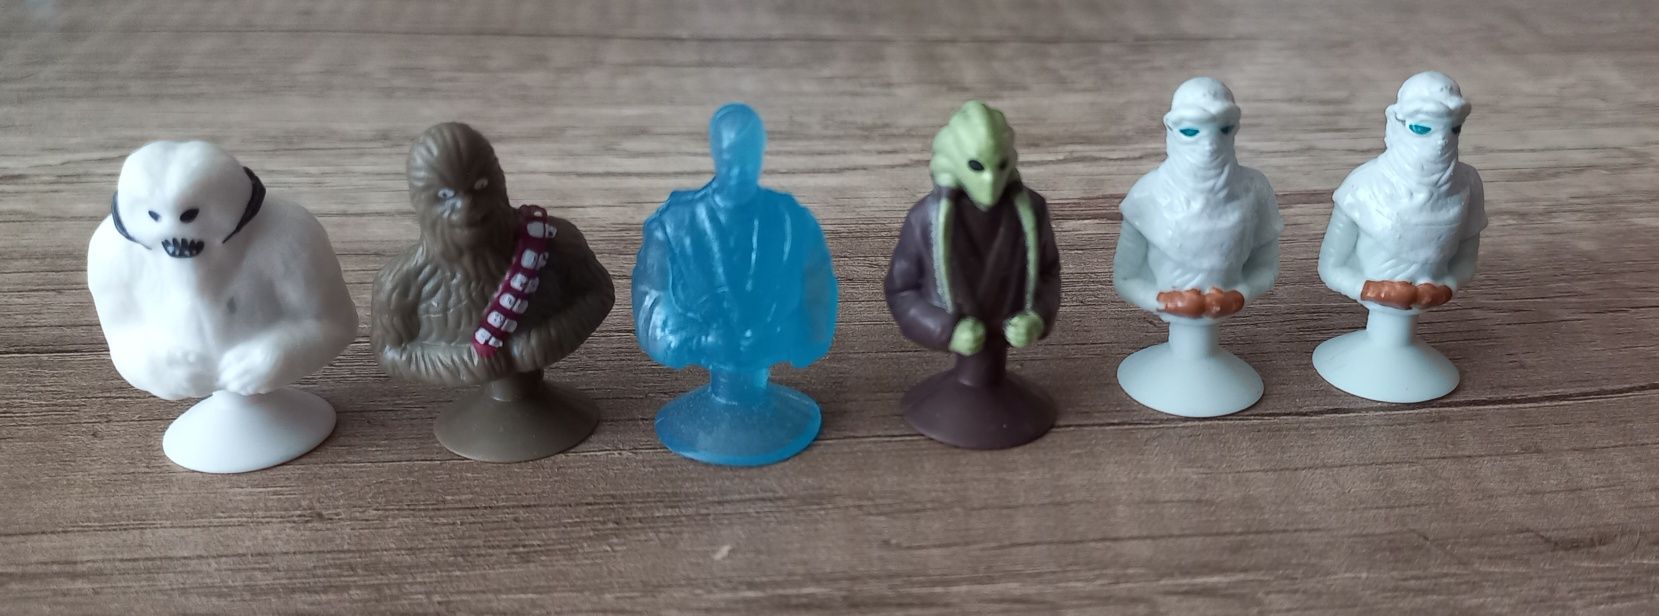 Stikez figurki Star Wars